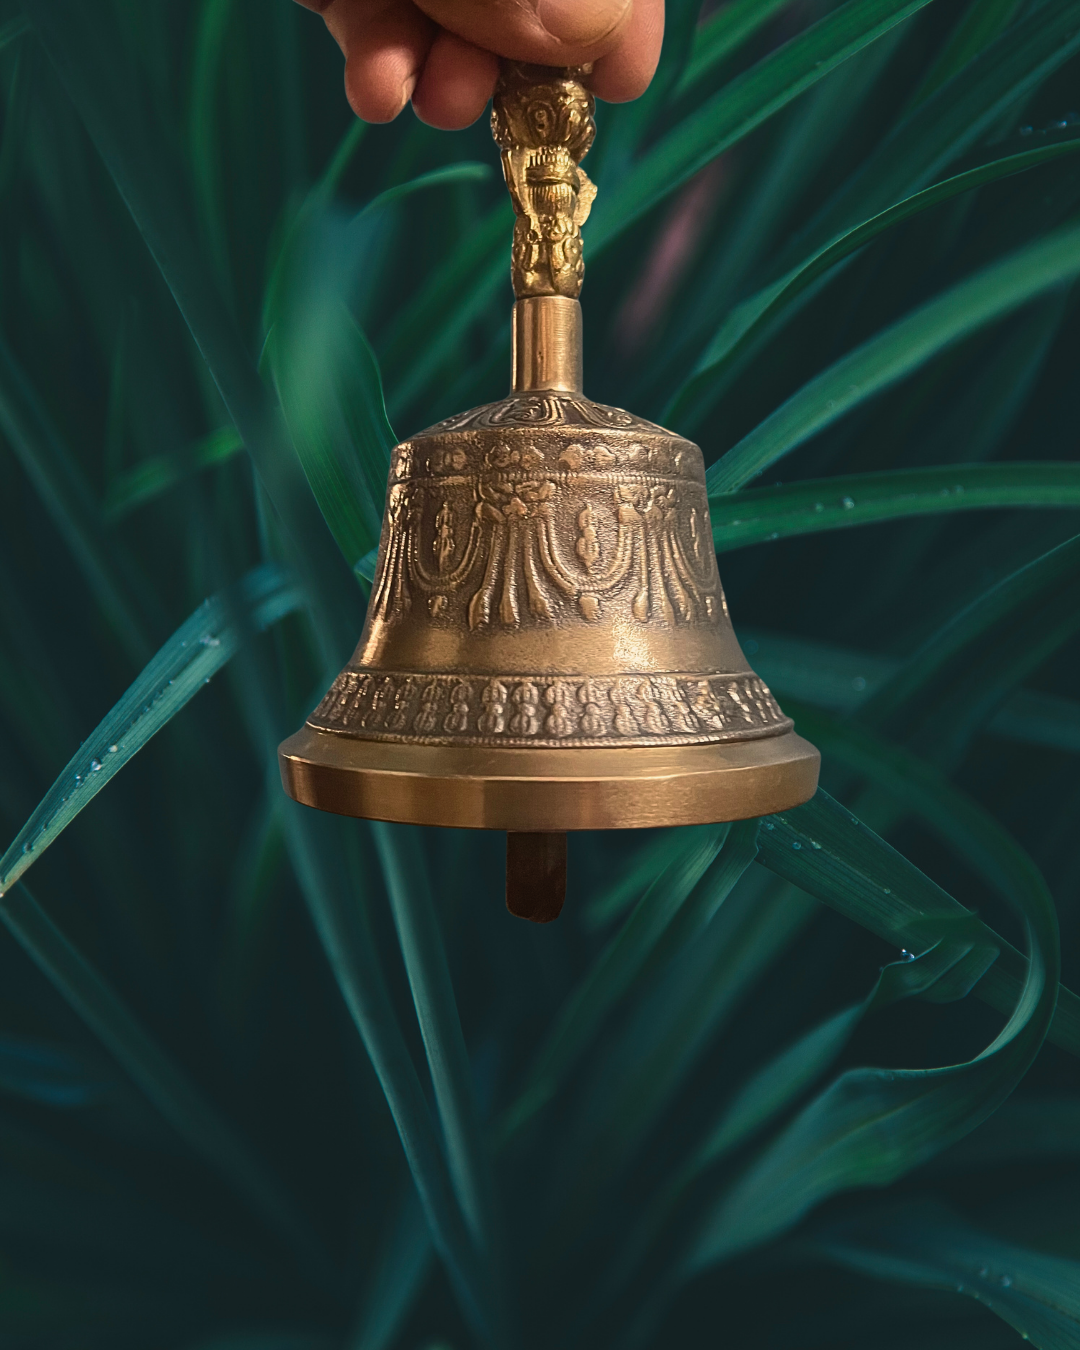 Temple Bell : देवळात प्रवेश करताना घंटा वाजवण्यामागचं काय आहे शास्त्र?-what  is the reason of ringing temple bell before entering temple ,धर्म बातम्या